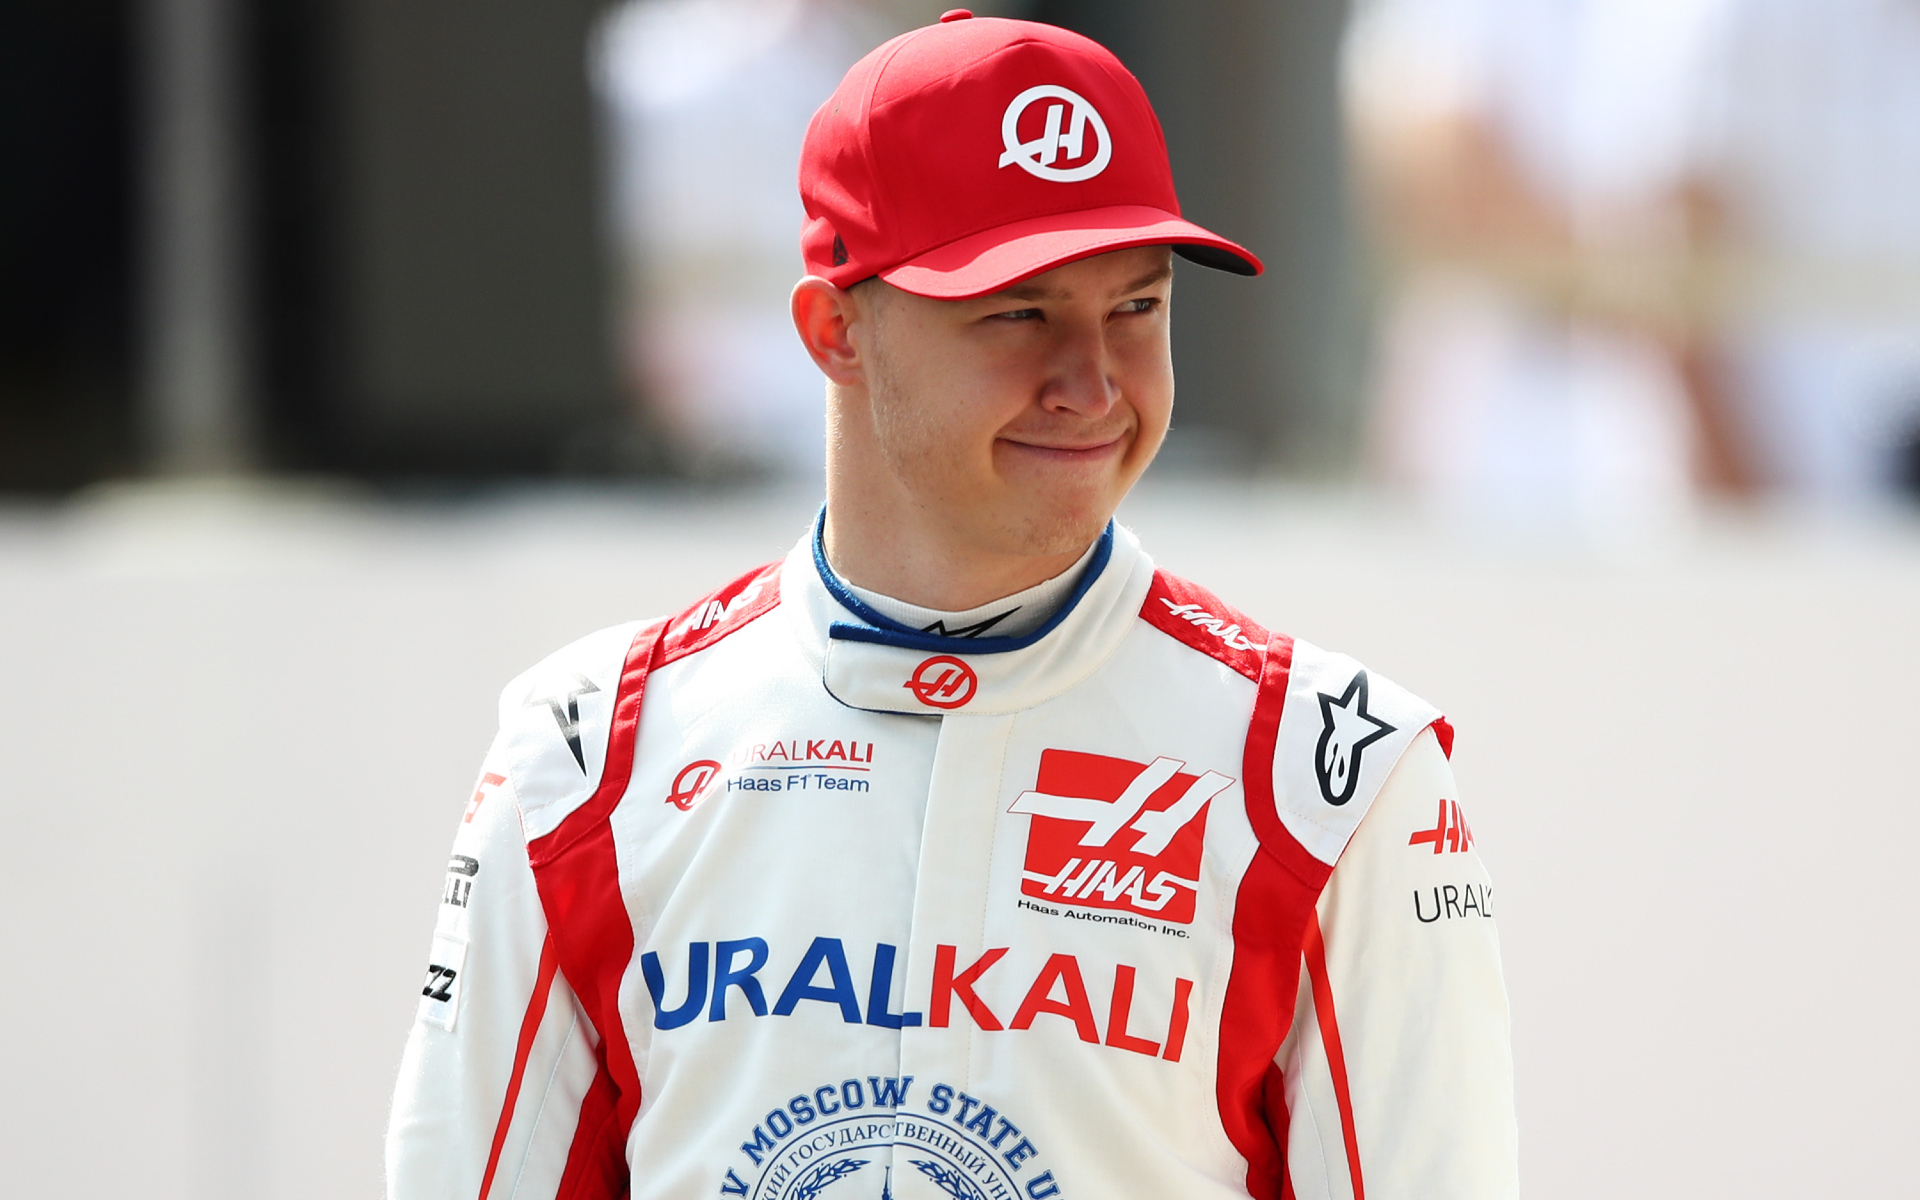 Мазепин оценил неудачные выступления Мика Шумахера в сезоне «Формулы-1»